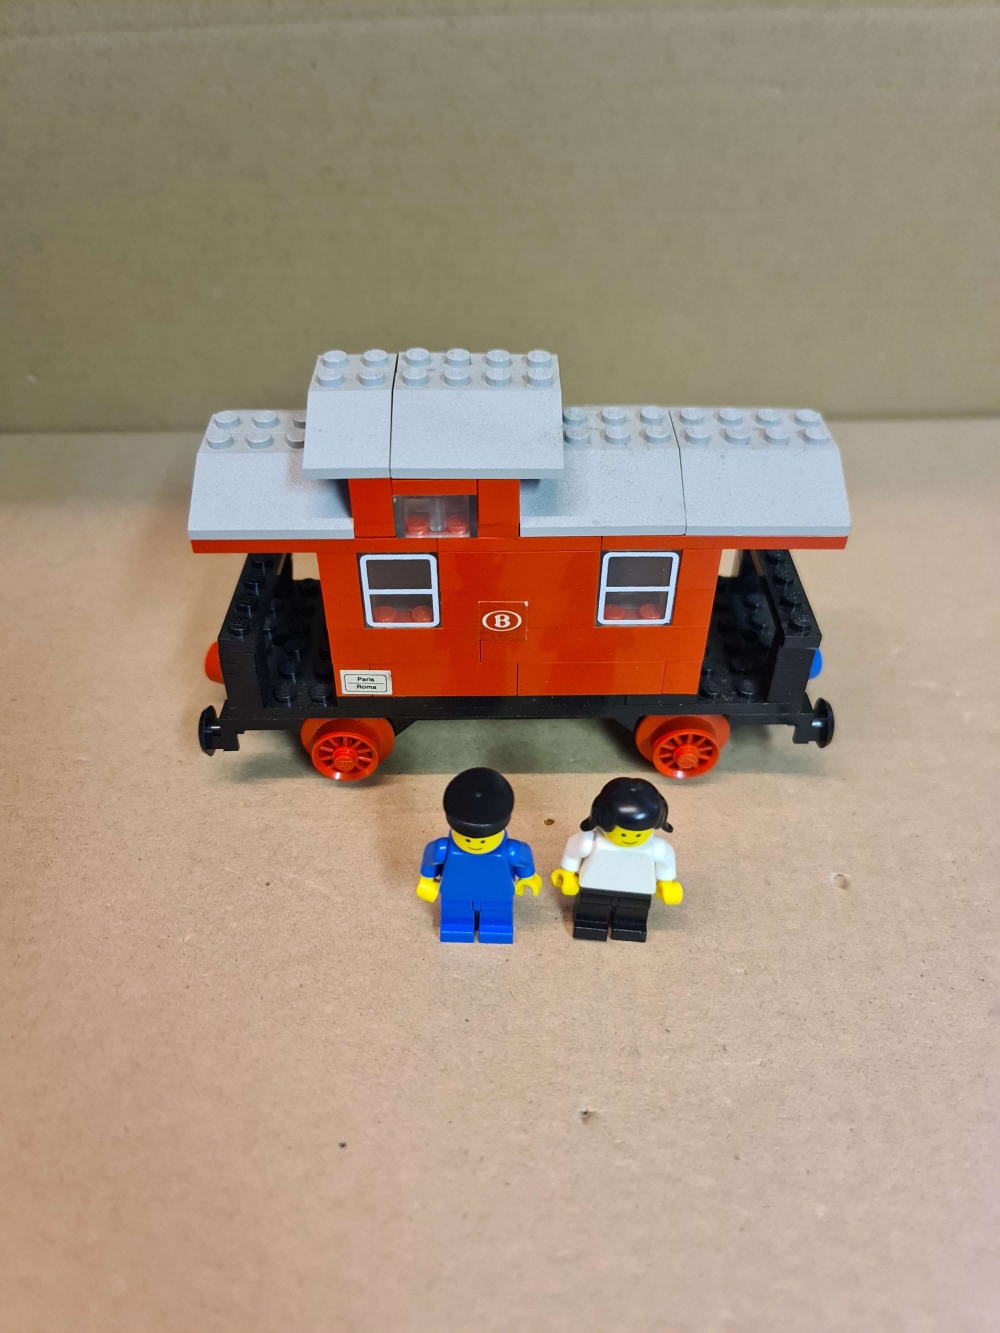 Sett 164 fra Lego Train : 4.5V serien.
Bygget som A-modell. Komplett modell A